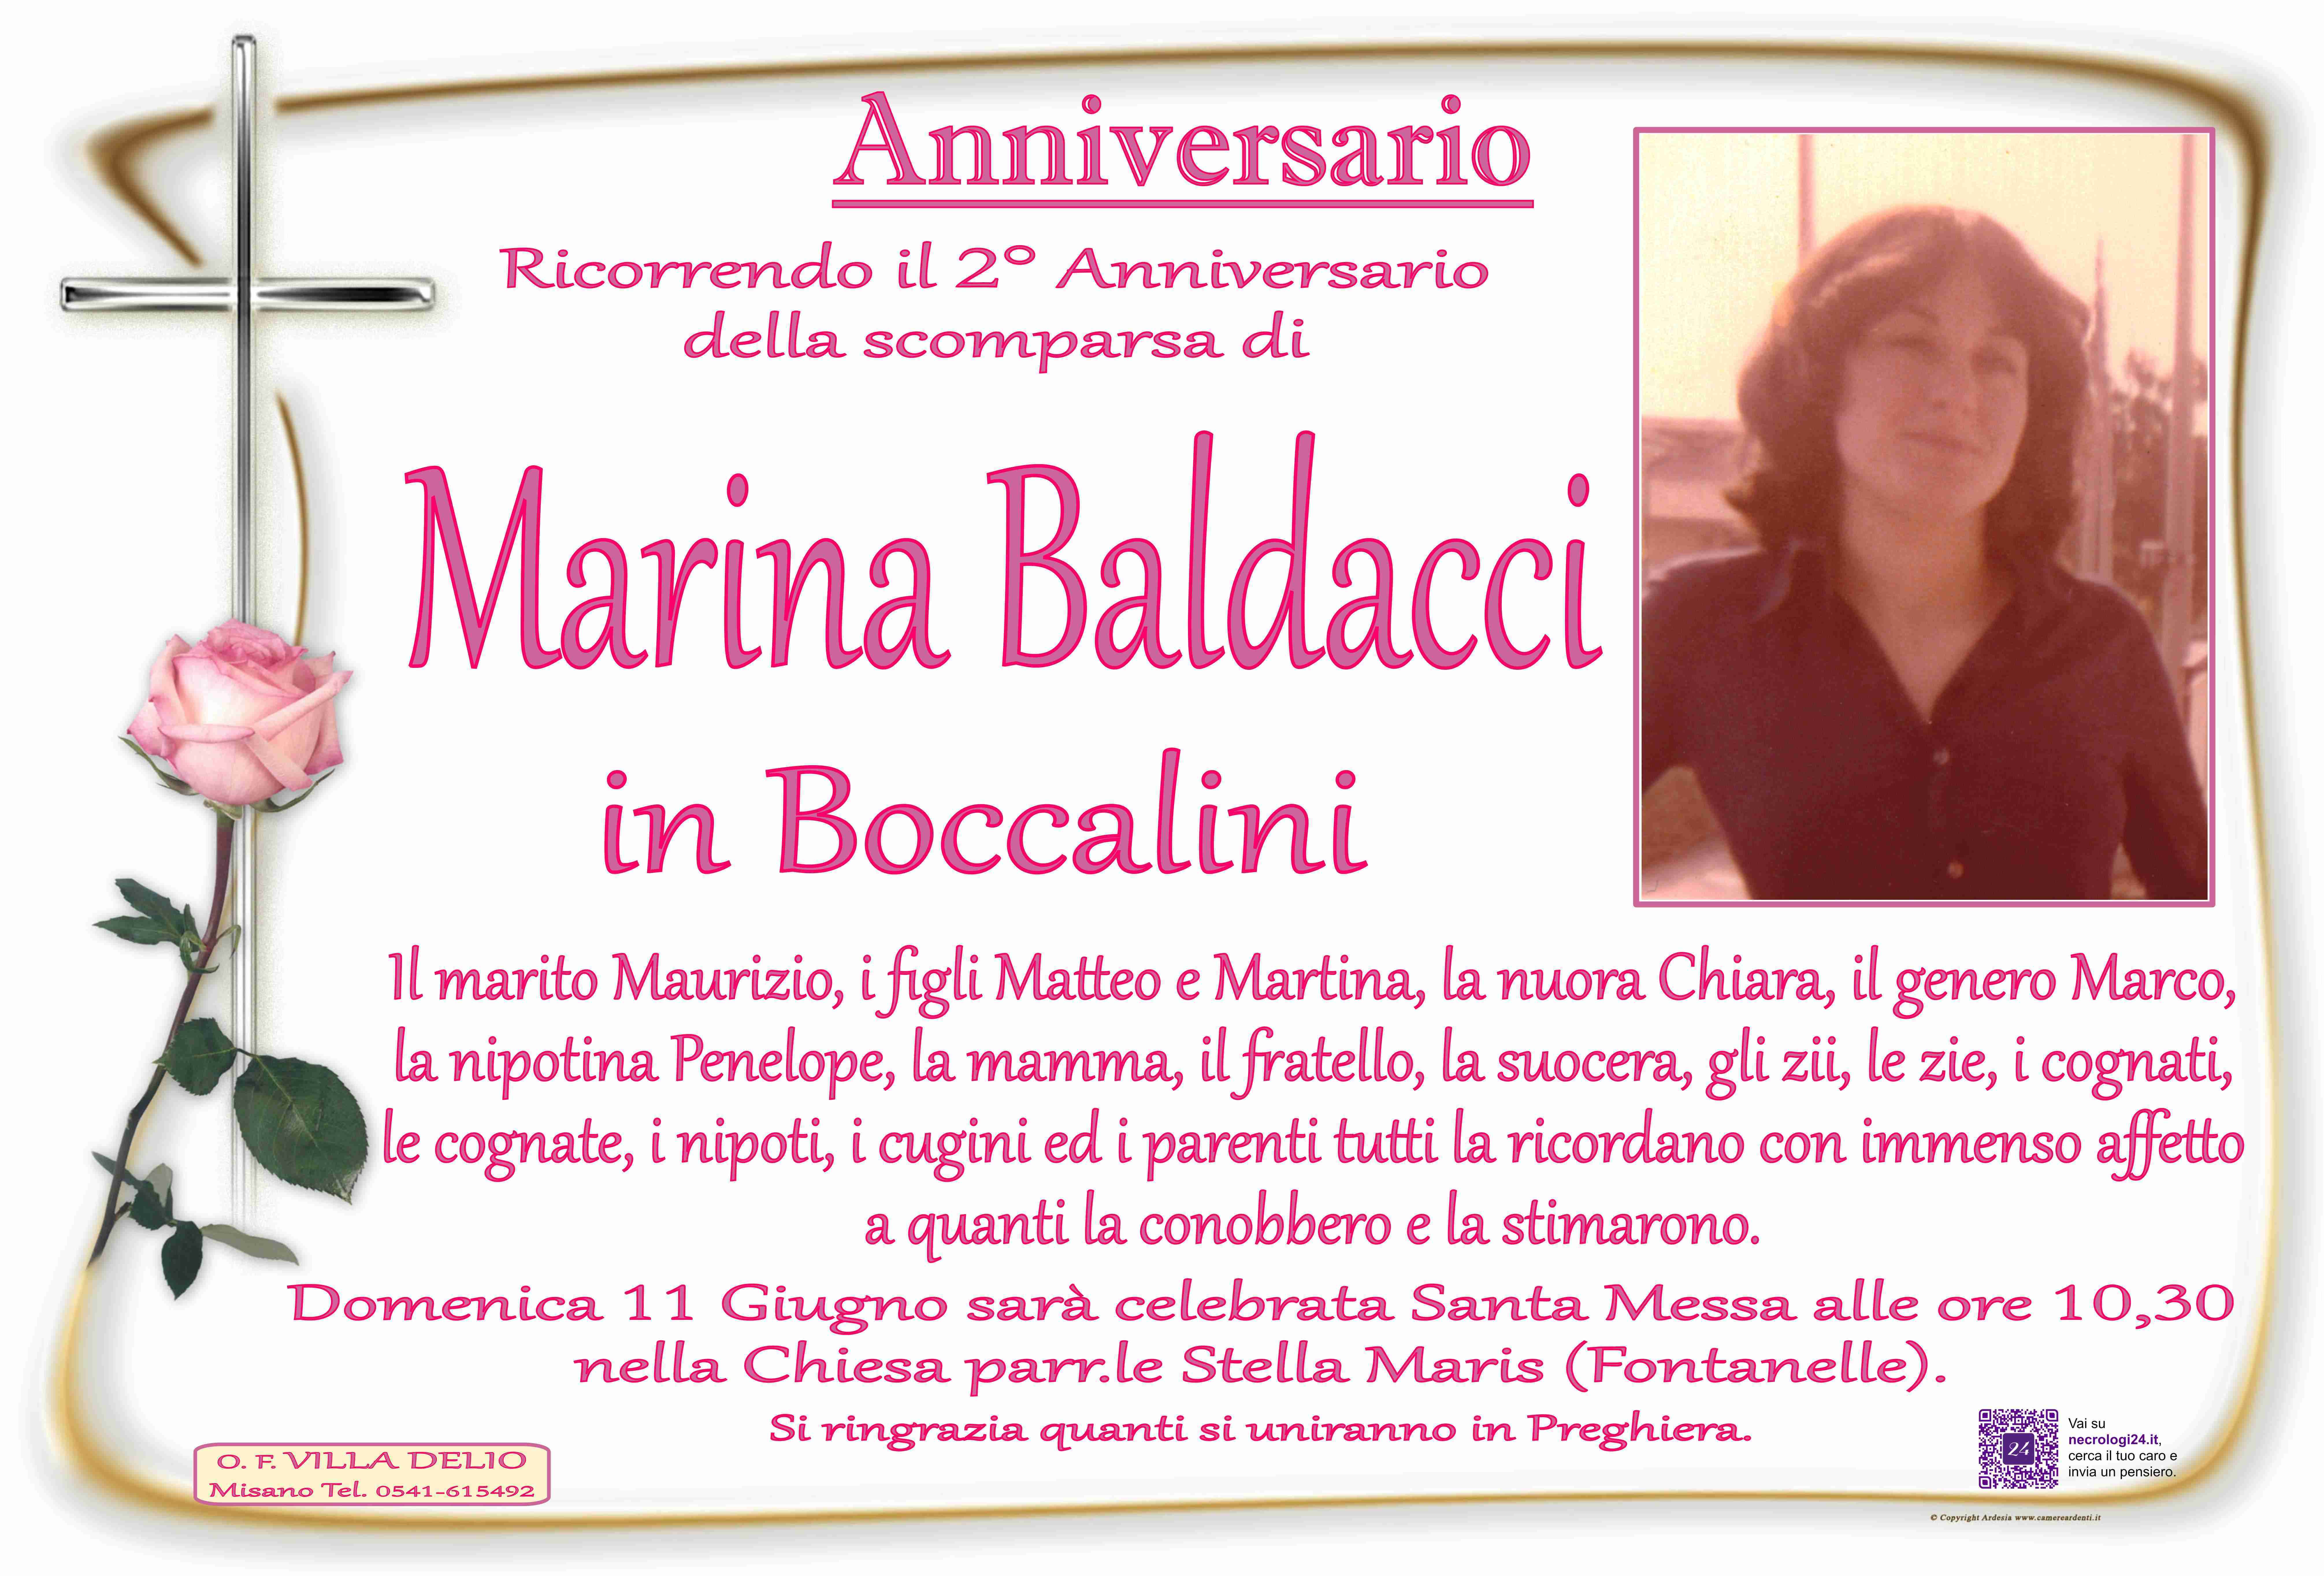 Marina Baldacci